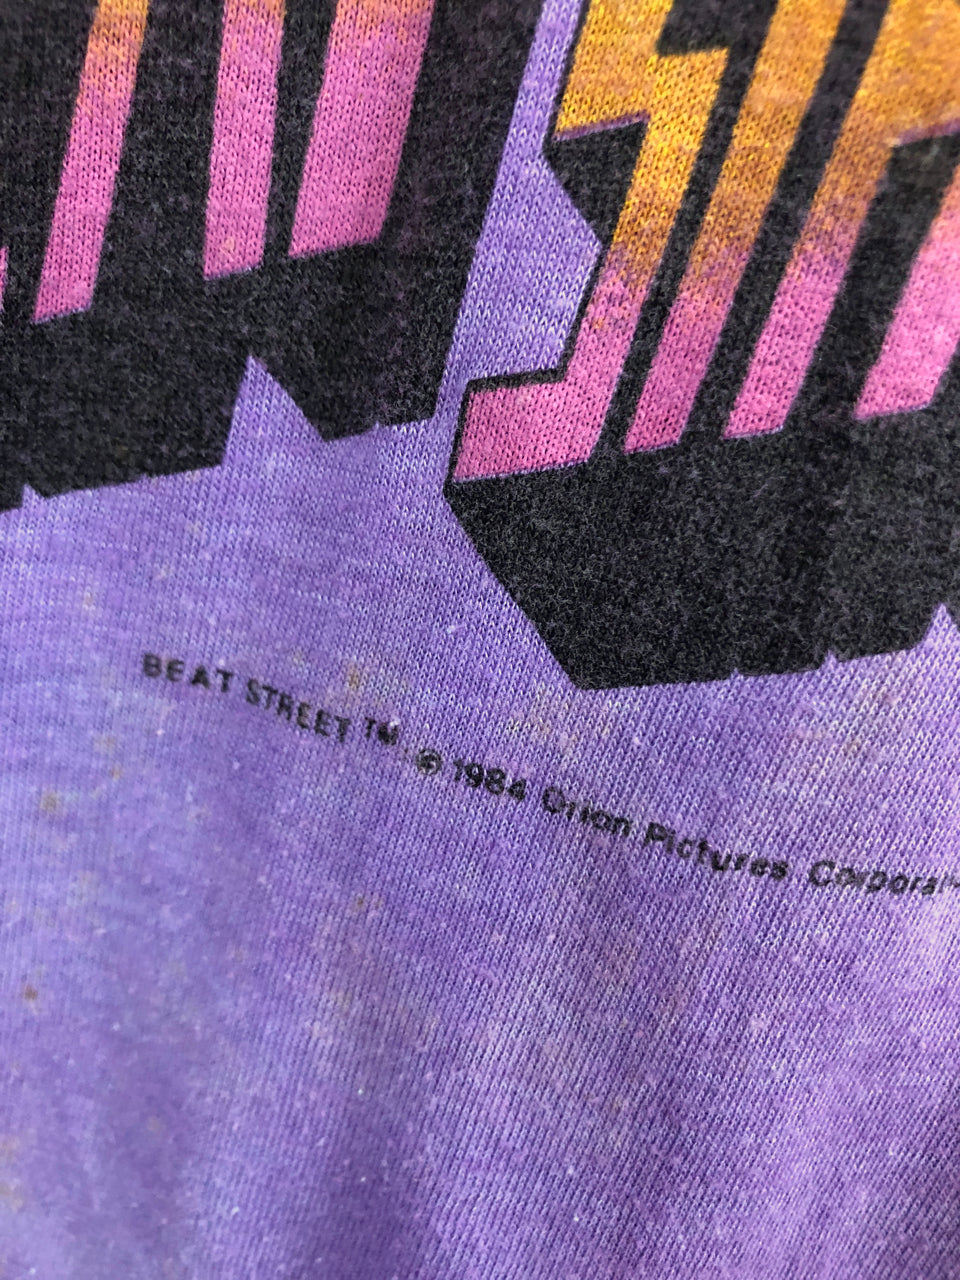 Kids' 1984 Beat Street Long-Sleeved T-Shirt